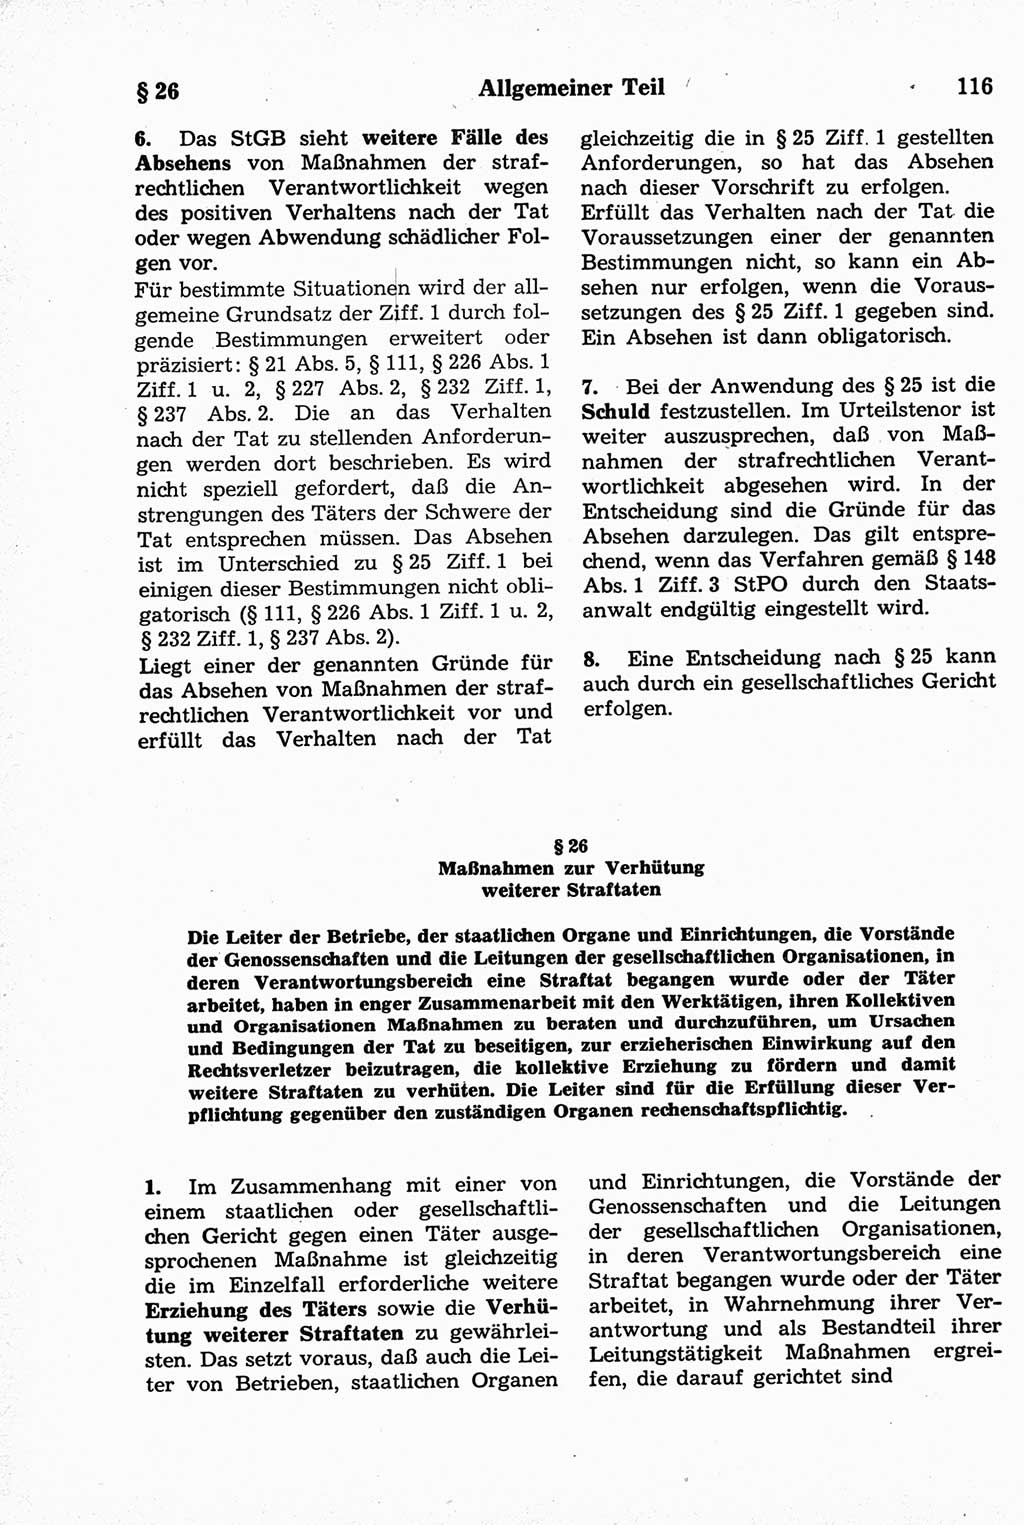 Strafrecht der Deutschen Demokratischen Republik (DDR), Kommentar zum Strafgesetzbuch (StGB) 1981, Seite 116 (Strafr. DDR Komm. StGB 1981, S. 116)